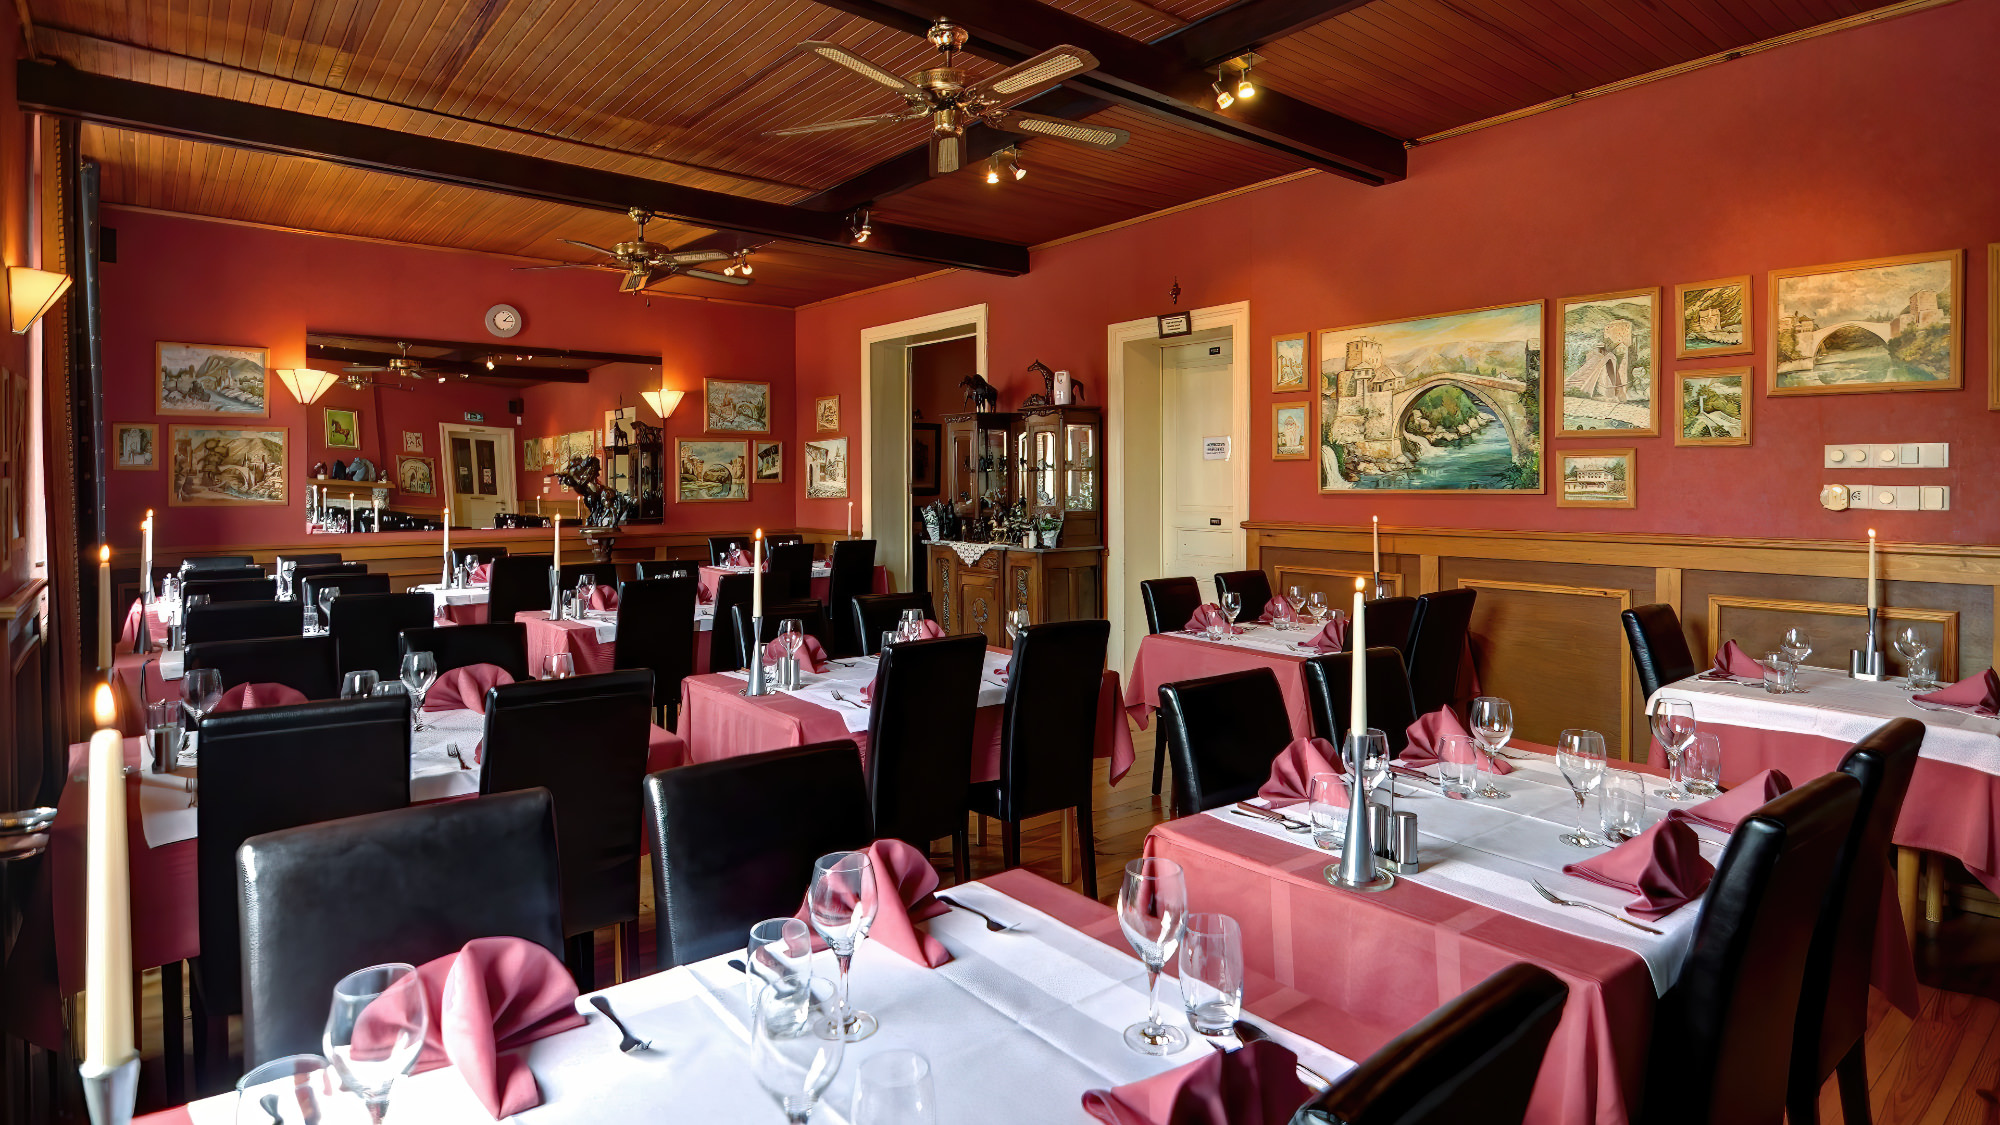 Eindruck des Restaurants in Mostar mit ordentlich gedeckten Tischen